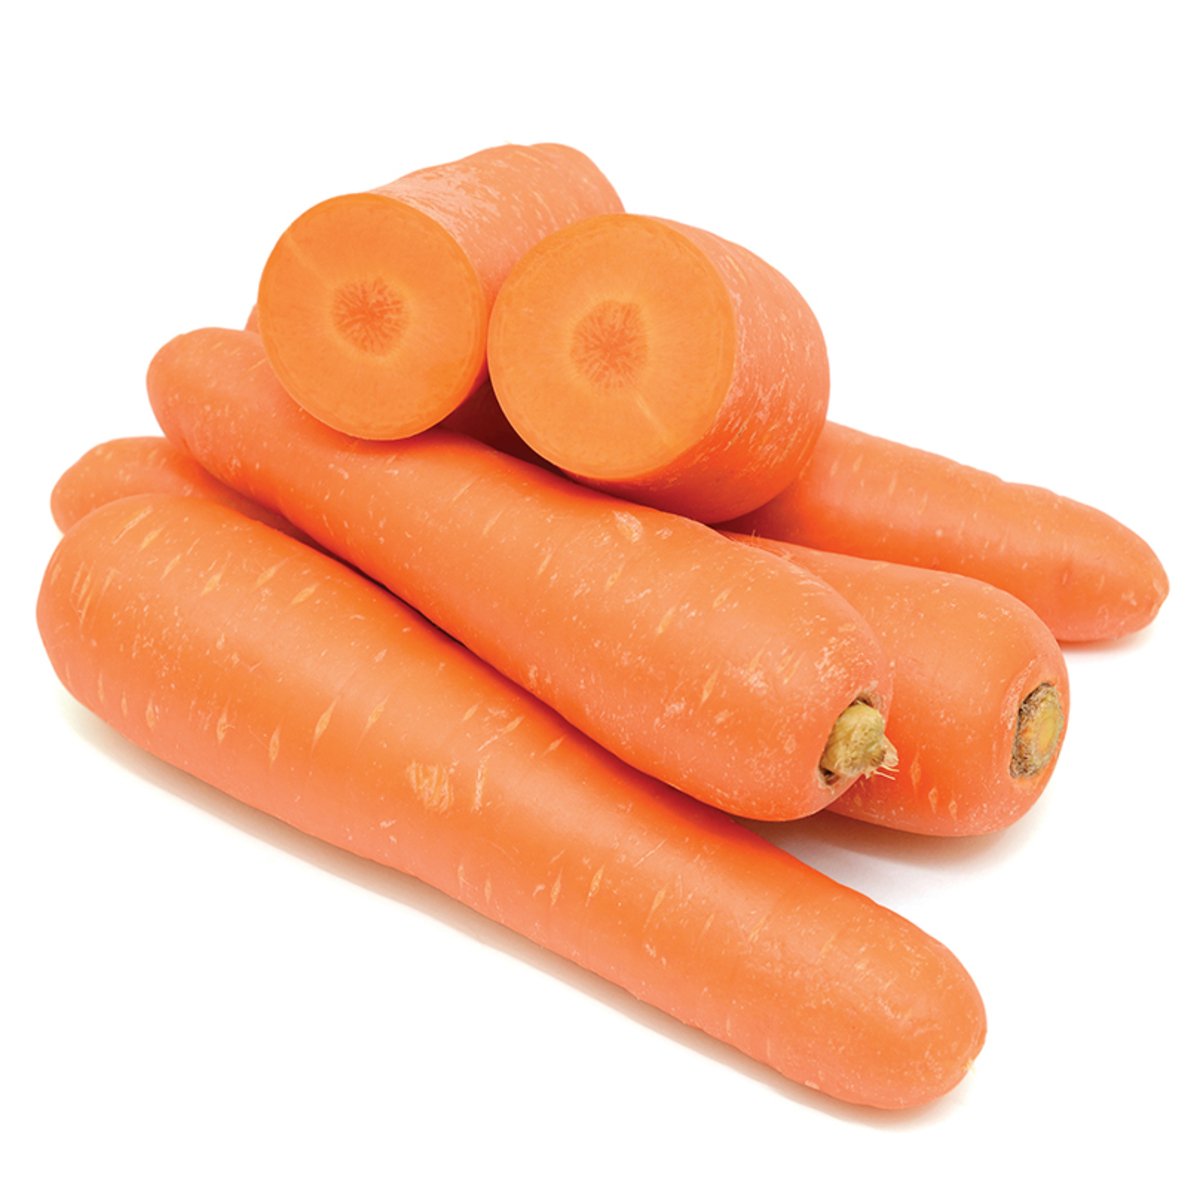 Carrots Australia 500 g